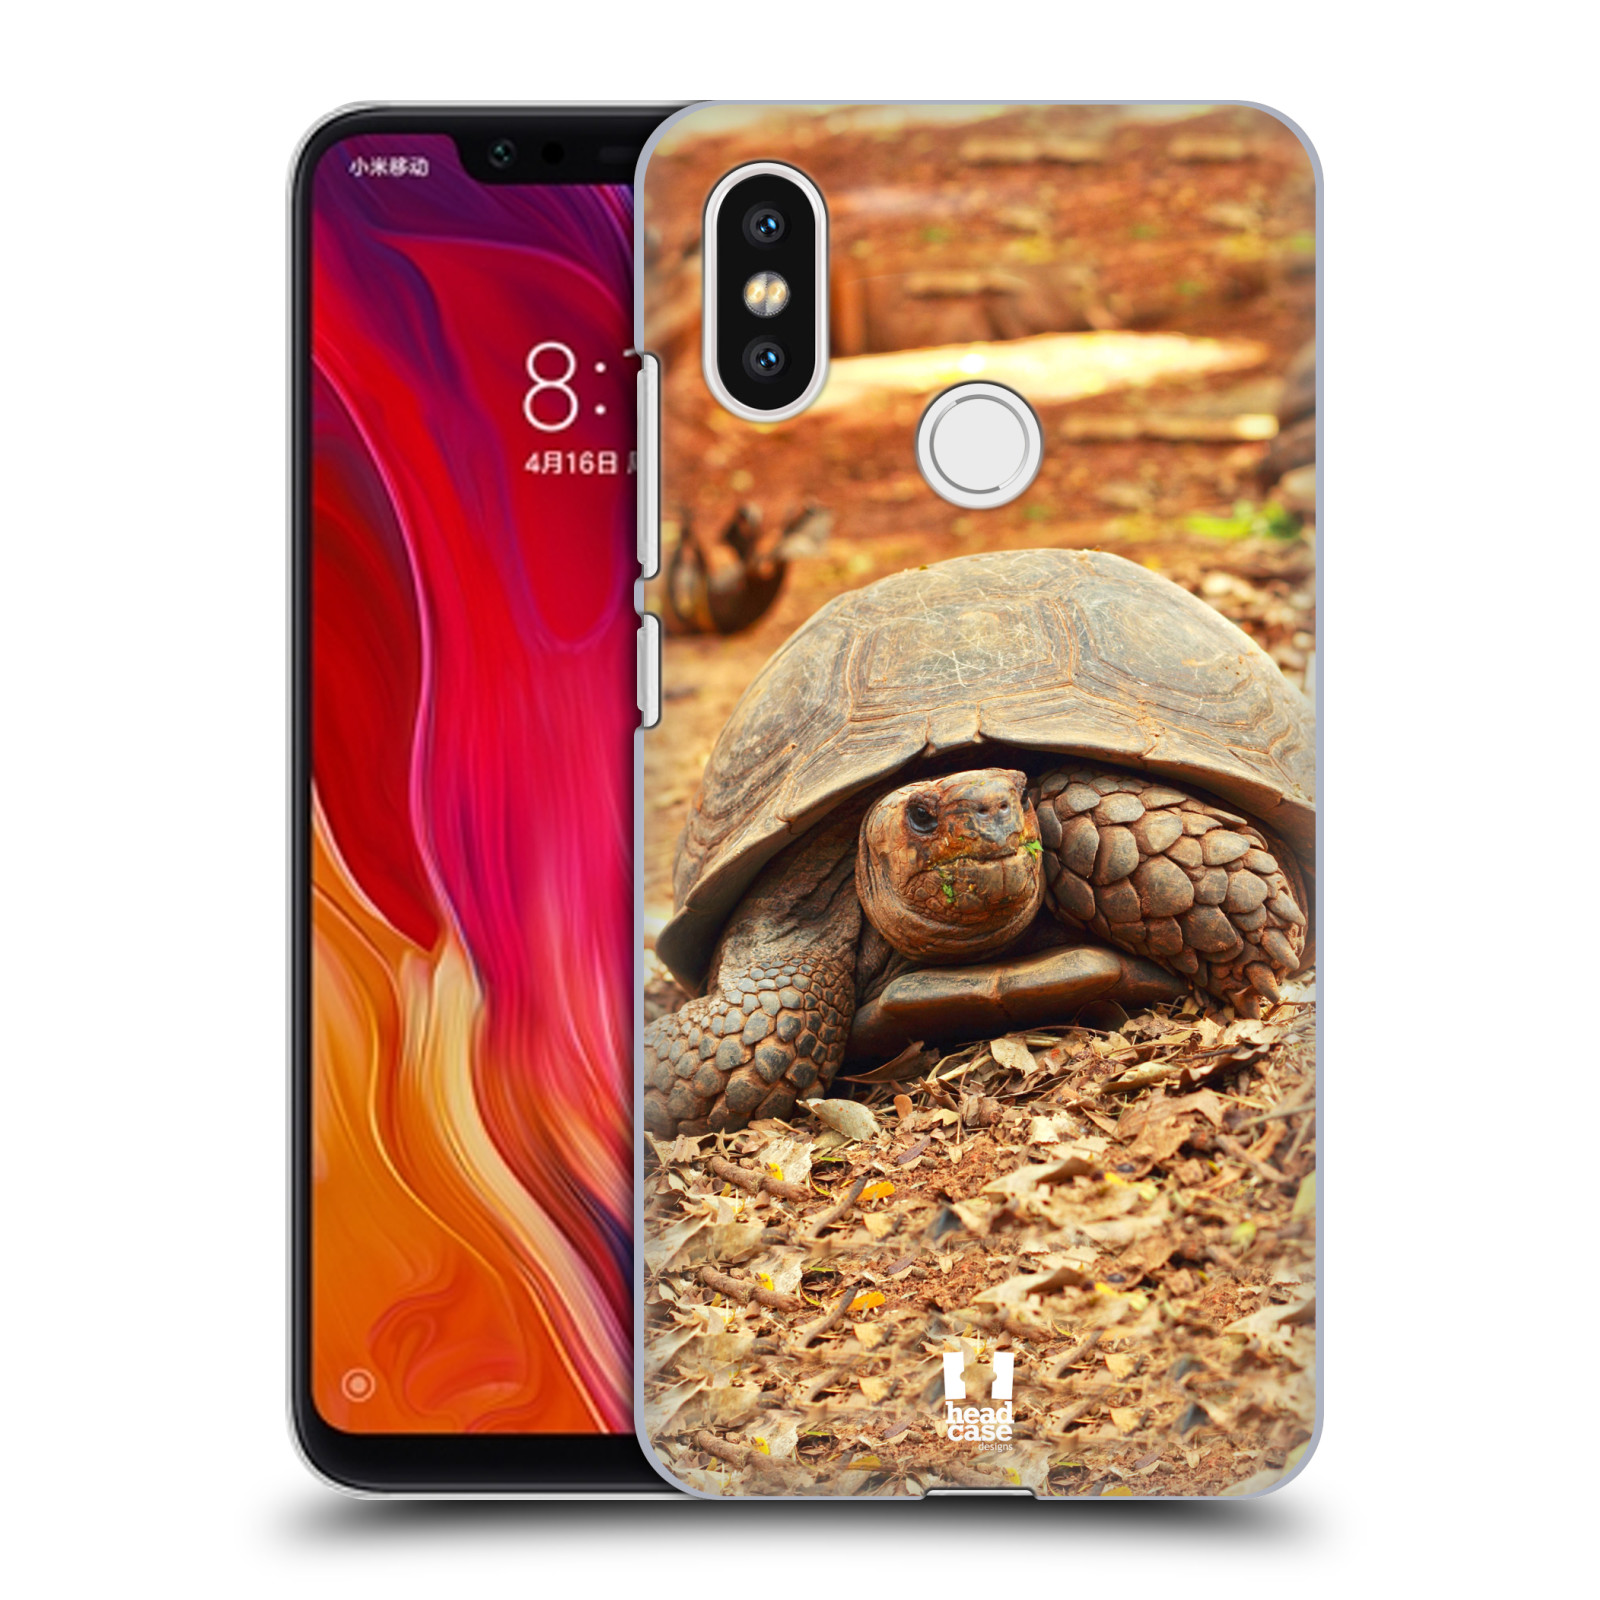 HEAD CASE plastový obal na mobil Xiaomi Mi 8 vzor slavná zvířata foto želva